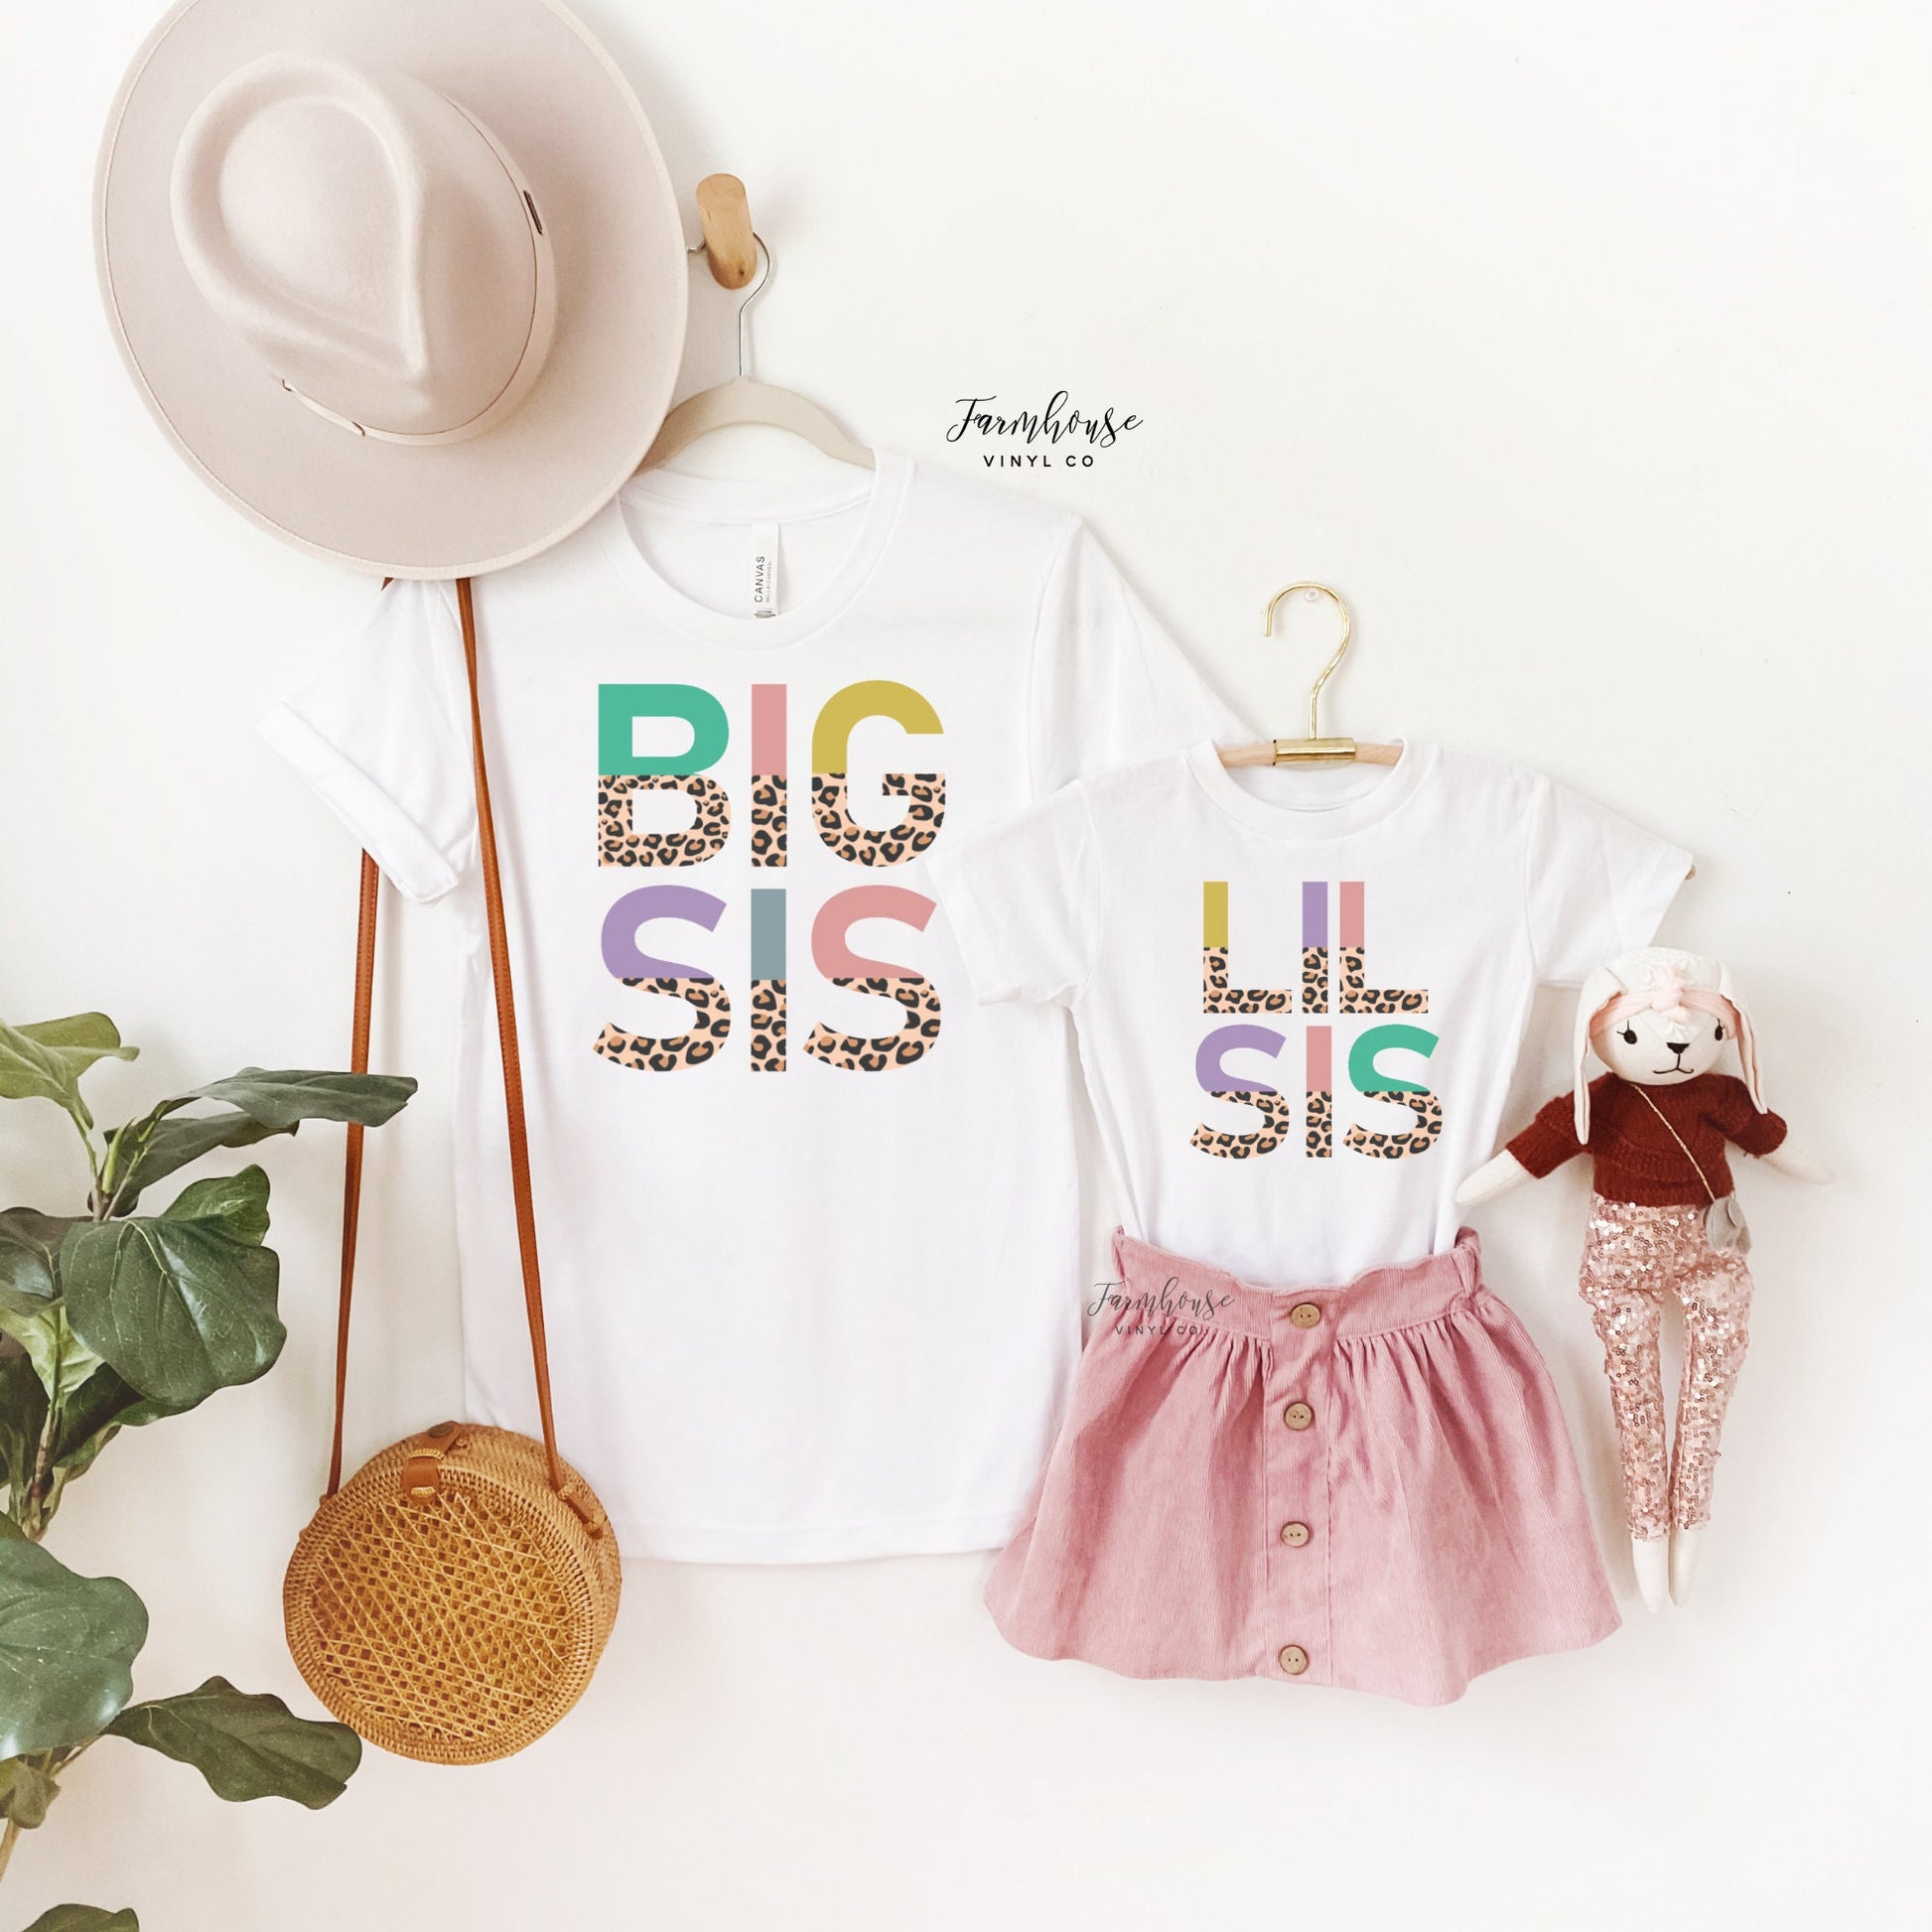 Big Sis Lil Sis Matching Shirts / Trendy shirt / Leopard Print Shirt / Pregnancy Announcement Shirts / Modern Shirts / Kids Matching Shirts - Farmhouse Vinyl Co